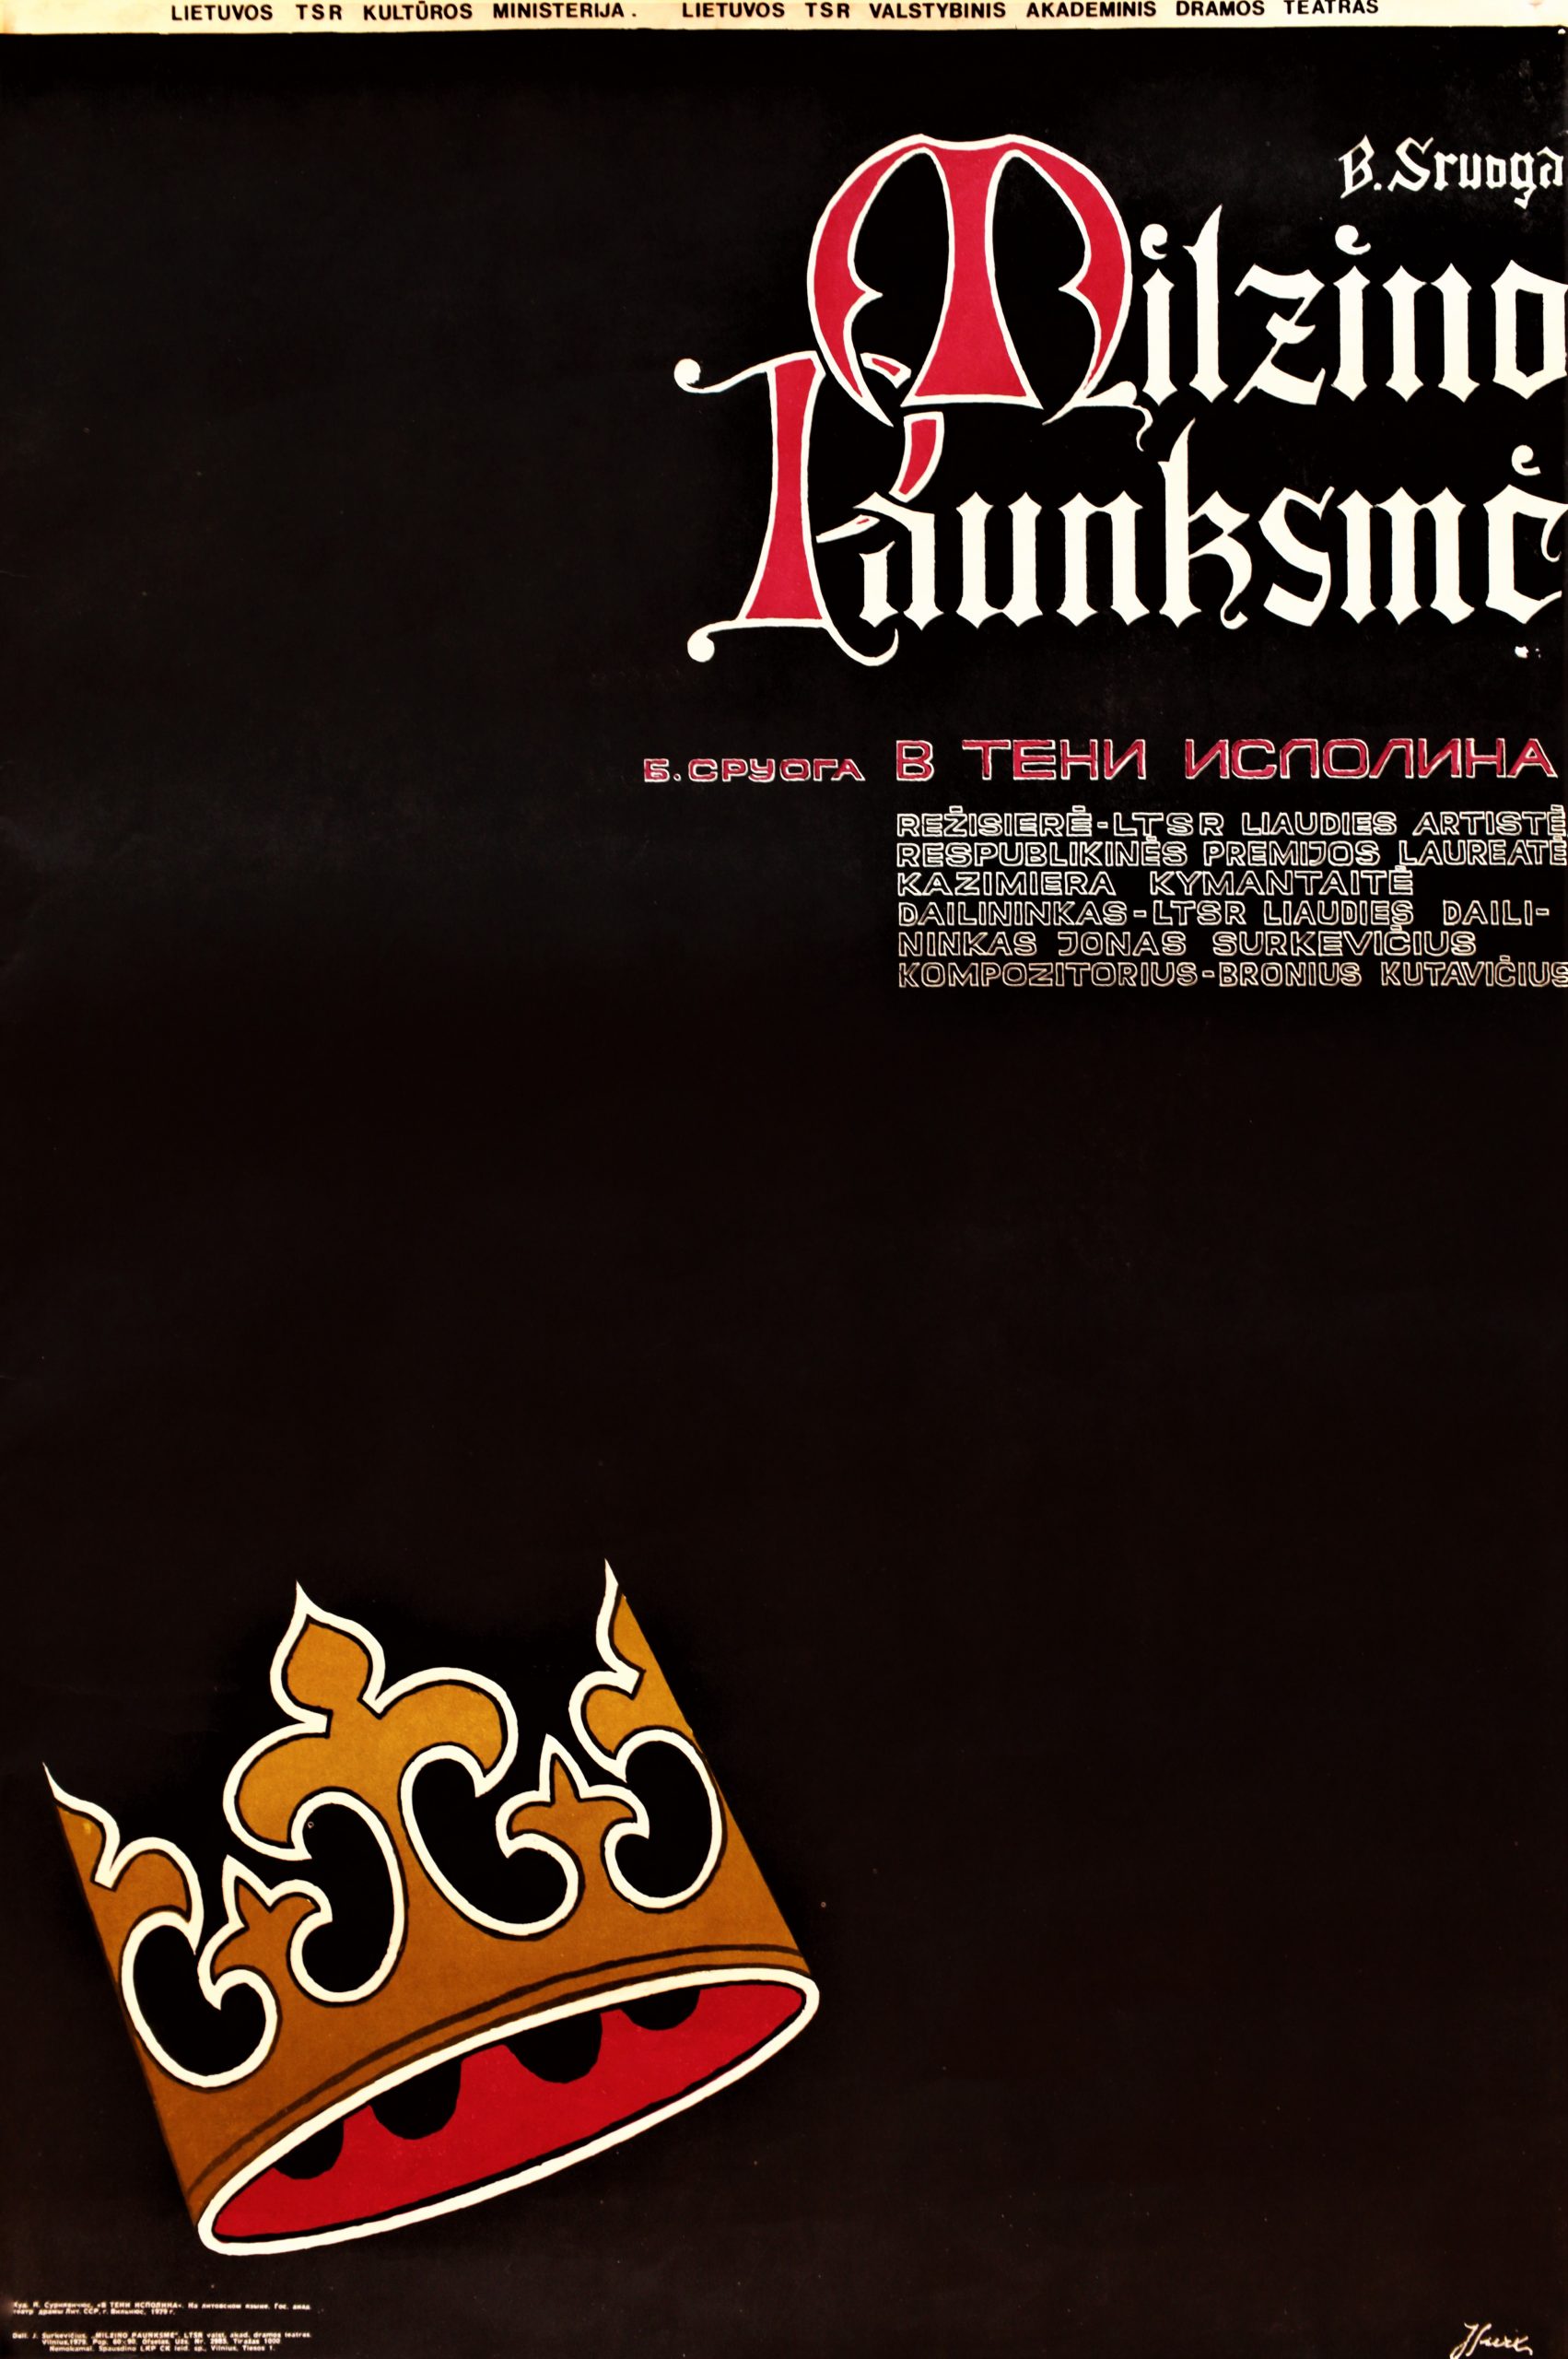 Balys Sruoga „Milžino paunksmė“, režisierė K. Kymantaitė, LTSR Valstybinis akademinis dramos teatras, plakato dailininkas J. Surkevičius, 1979 m.